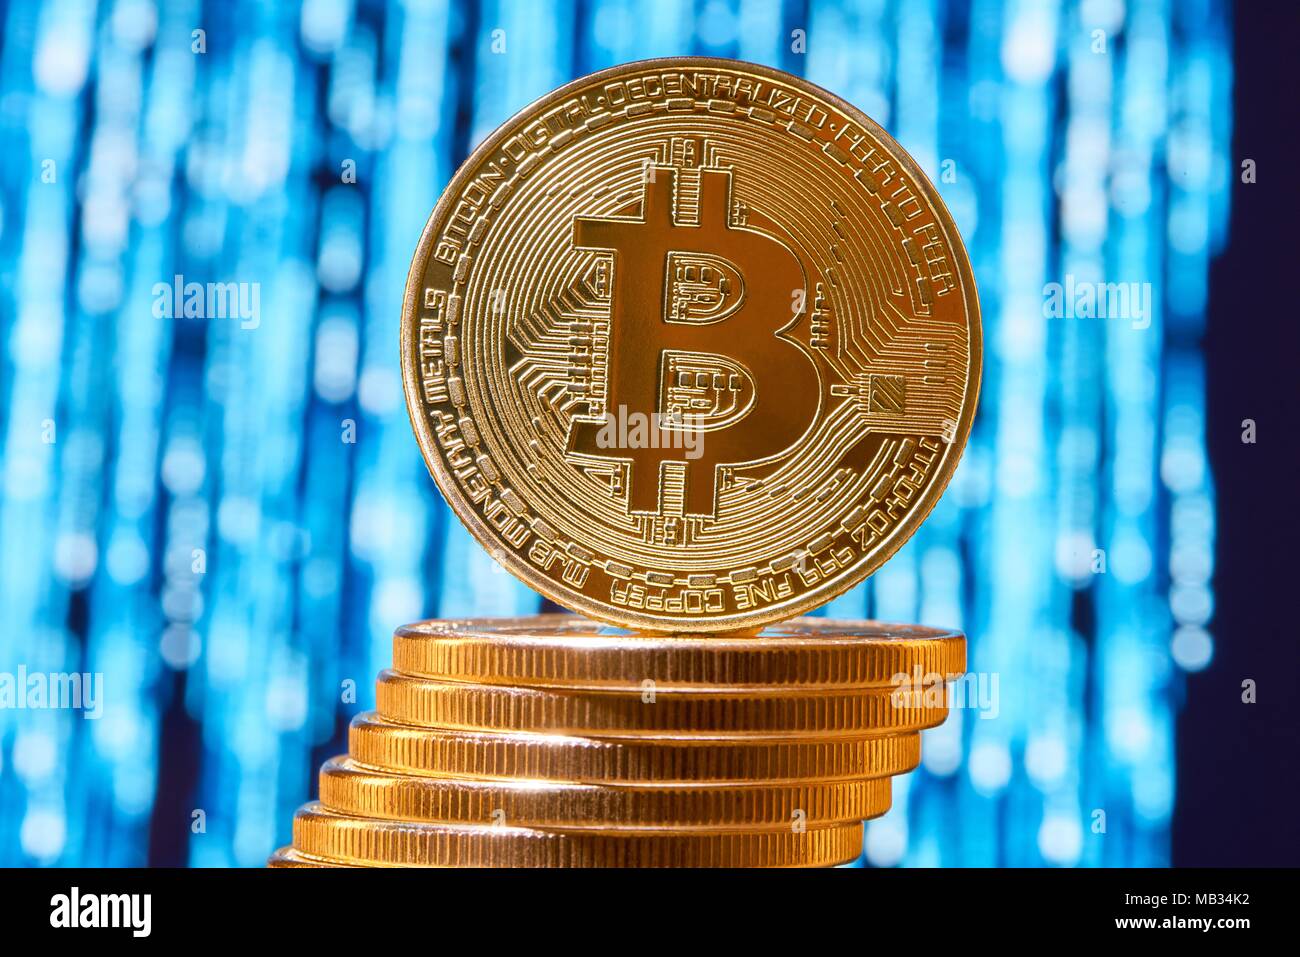 L'un sur le bord des bitcoins mis sur pile de bitcoins en or avec fond bleu trouble sur circuit. La monnaie électronique de l'argent virtuel numérique blockchain avenir bourse finances bancaires innovantes Banque D'Images